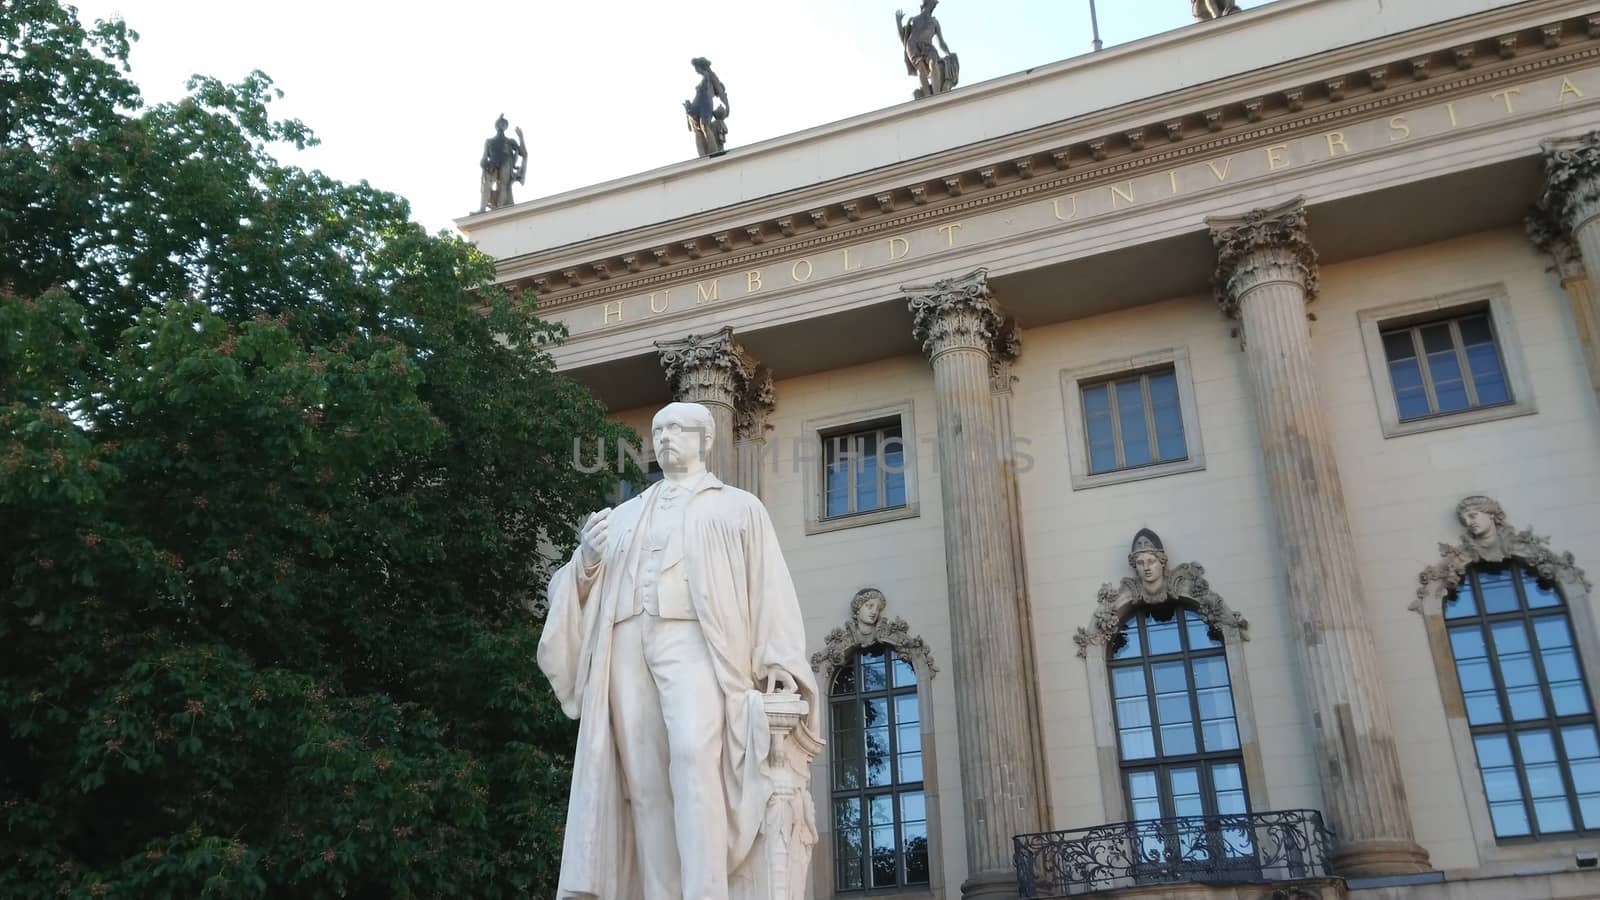 Famous Humboldt University in Berlin